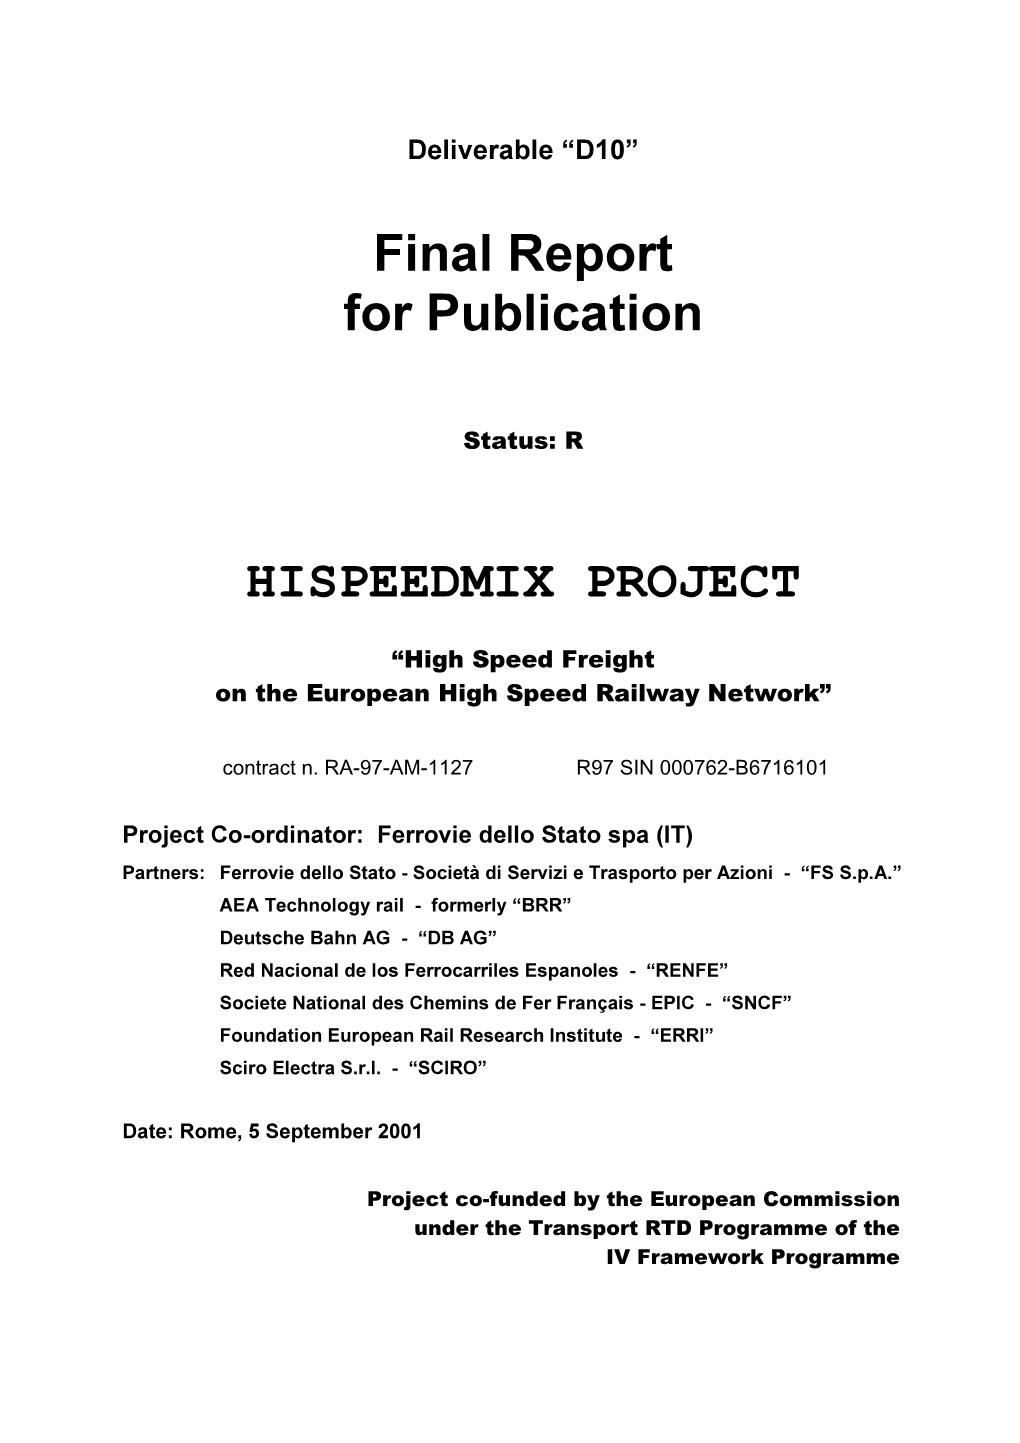 Hispeedmix.Pdf (Final Report)